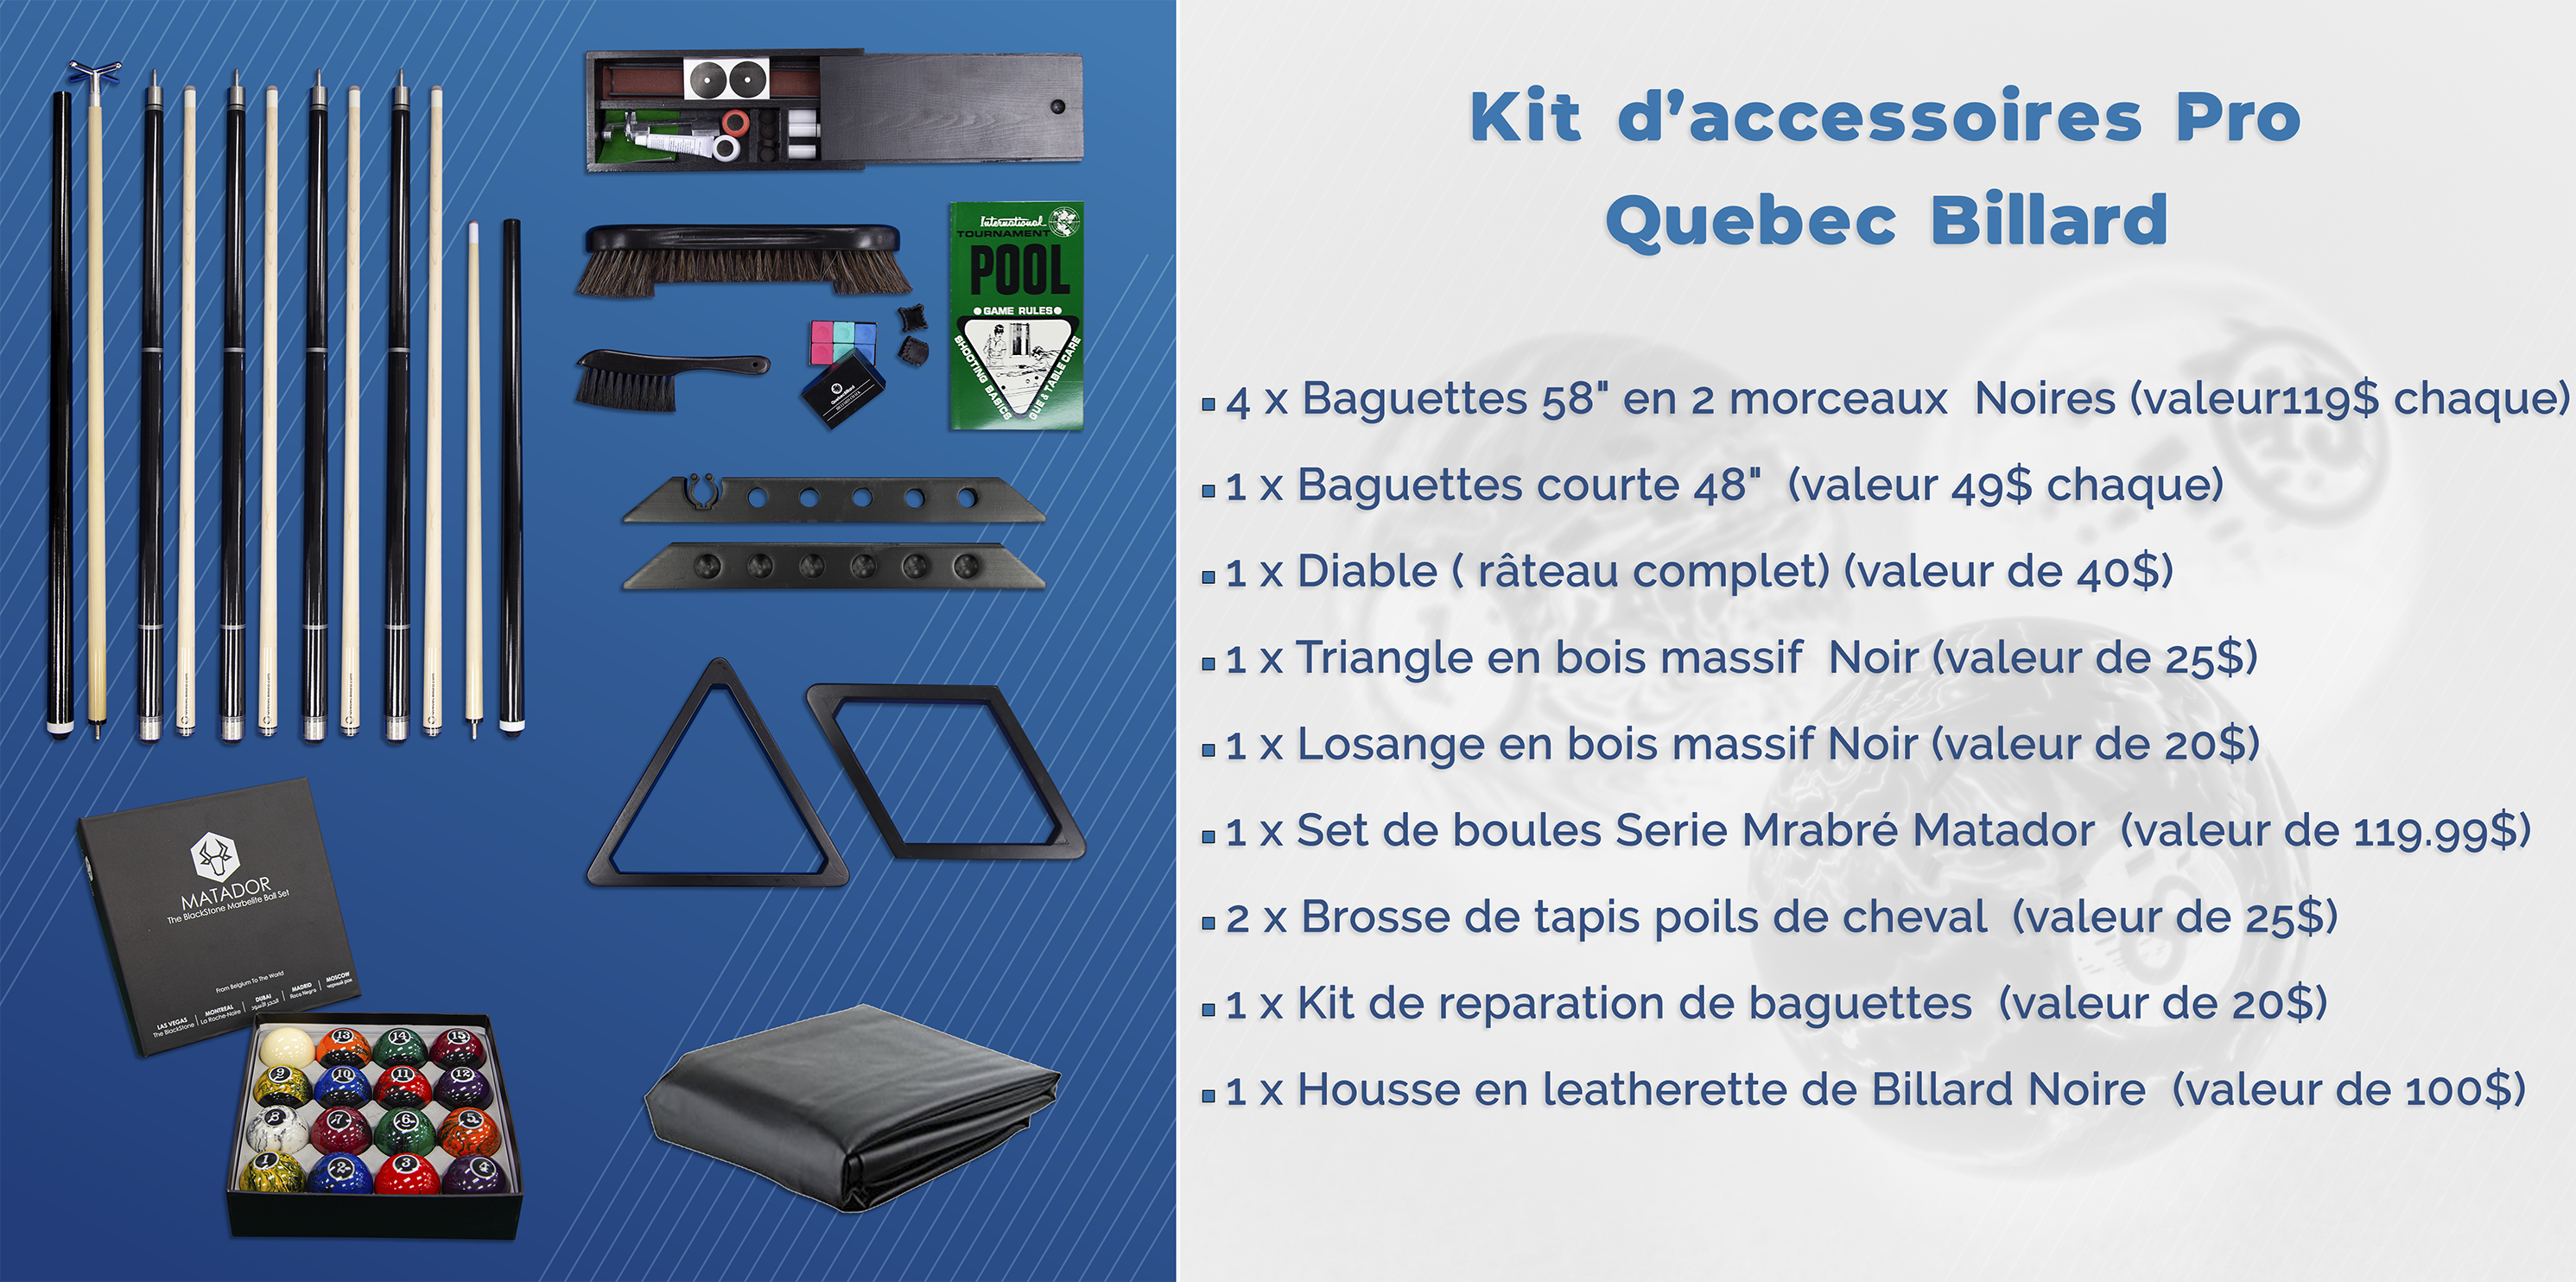 Kit d'accessoires Pro Quebec Billard